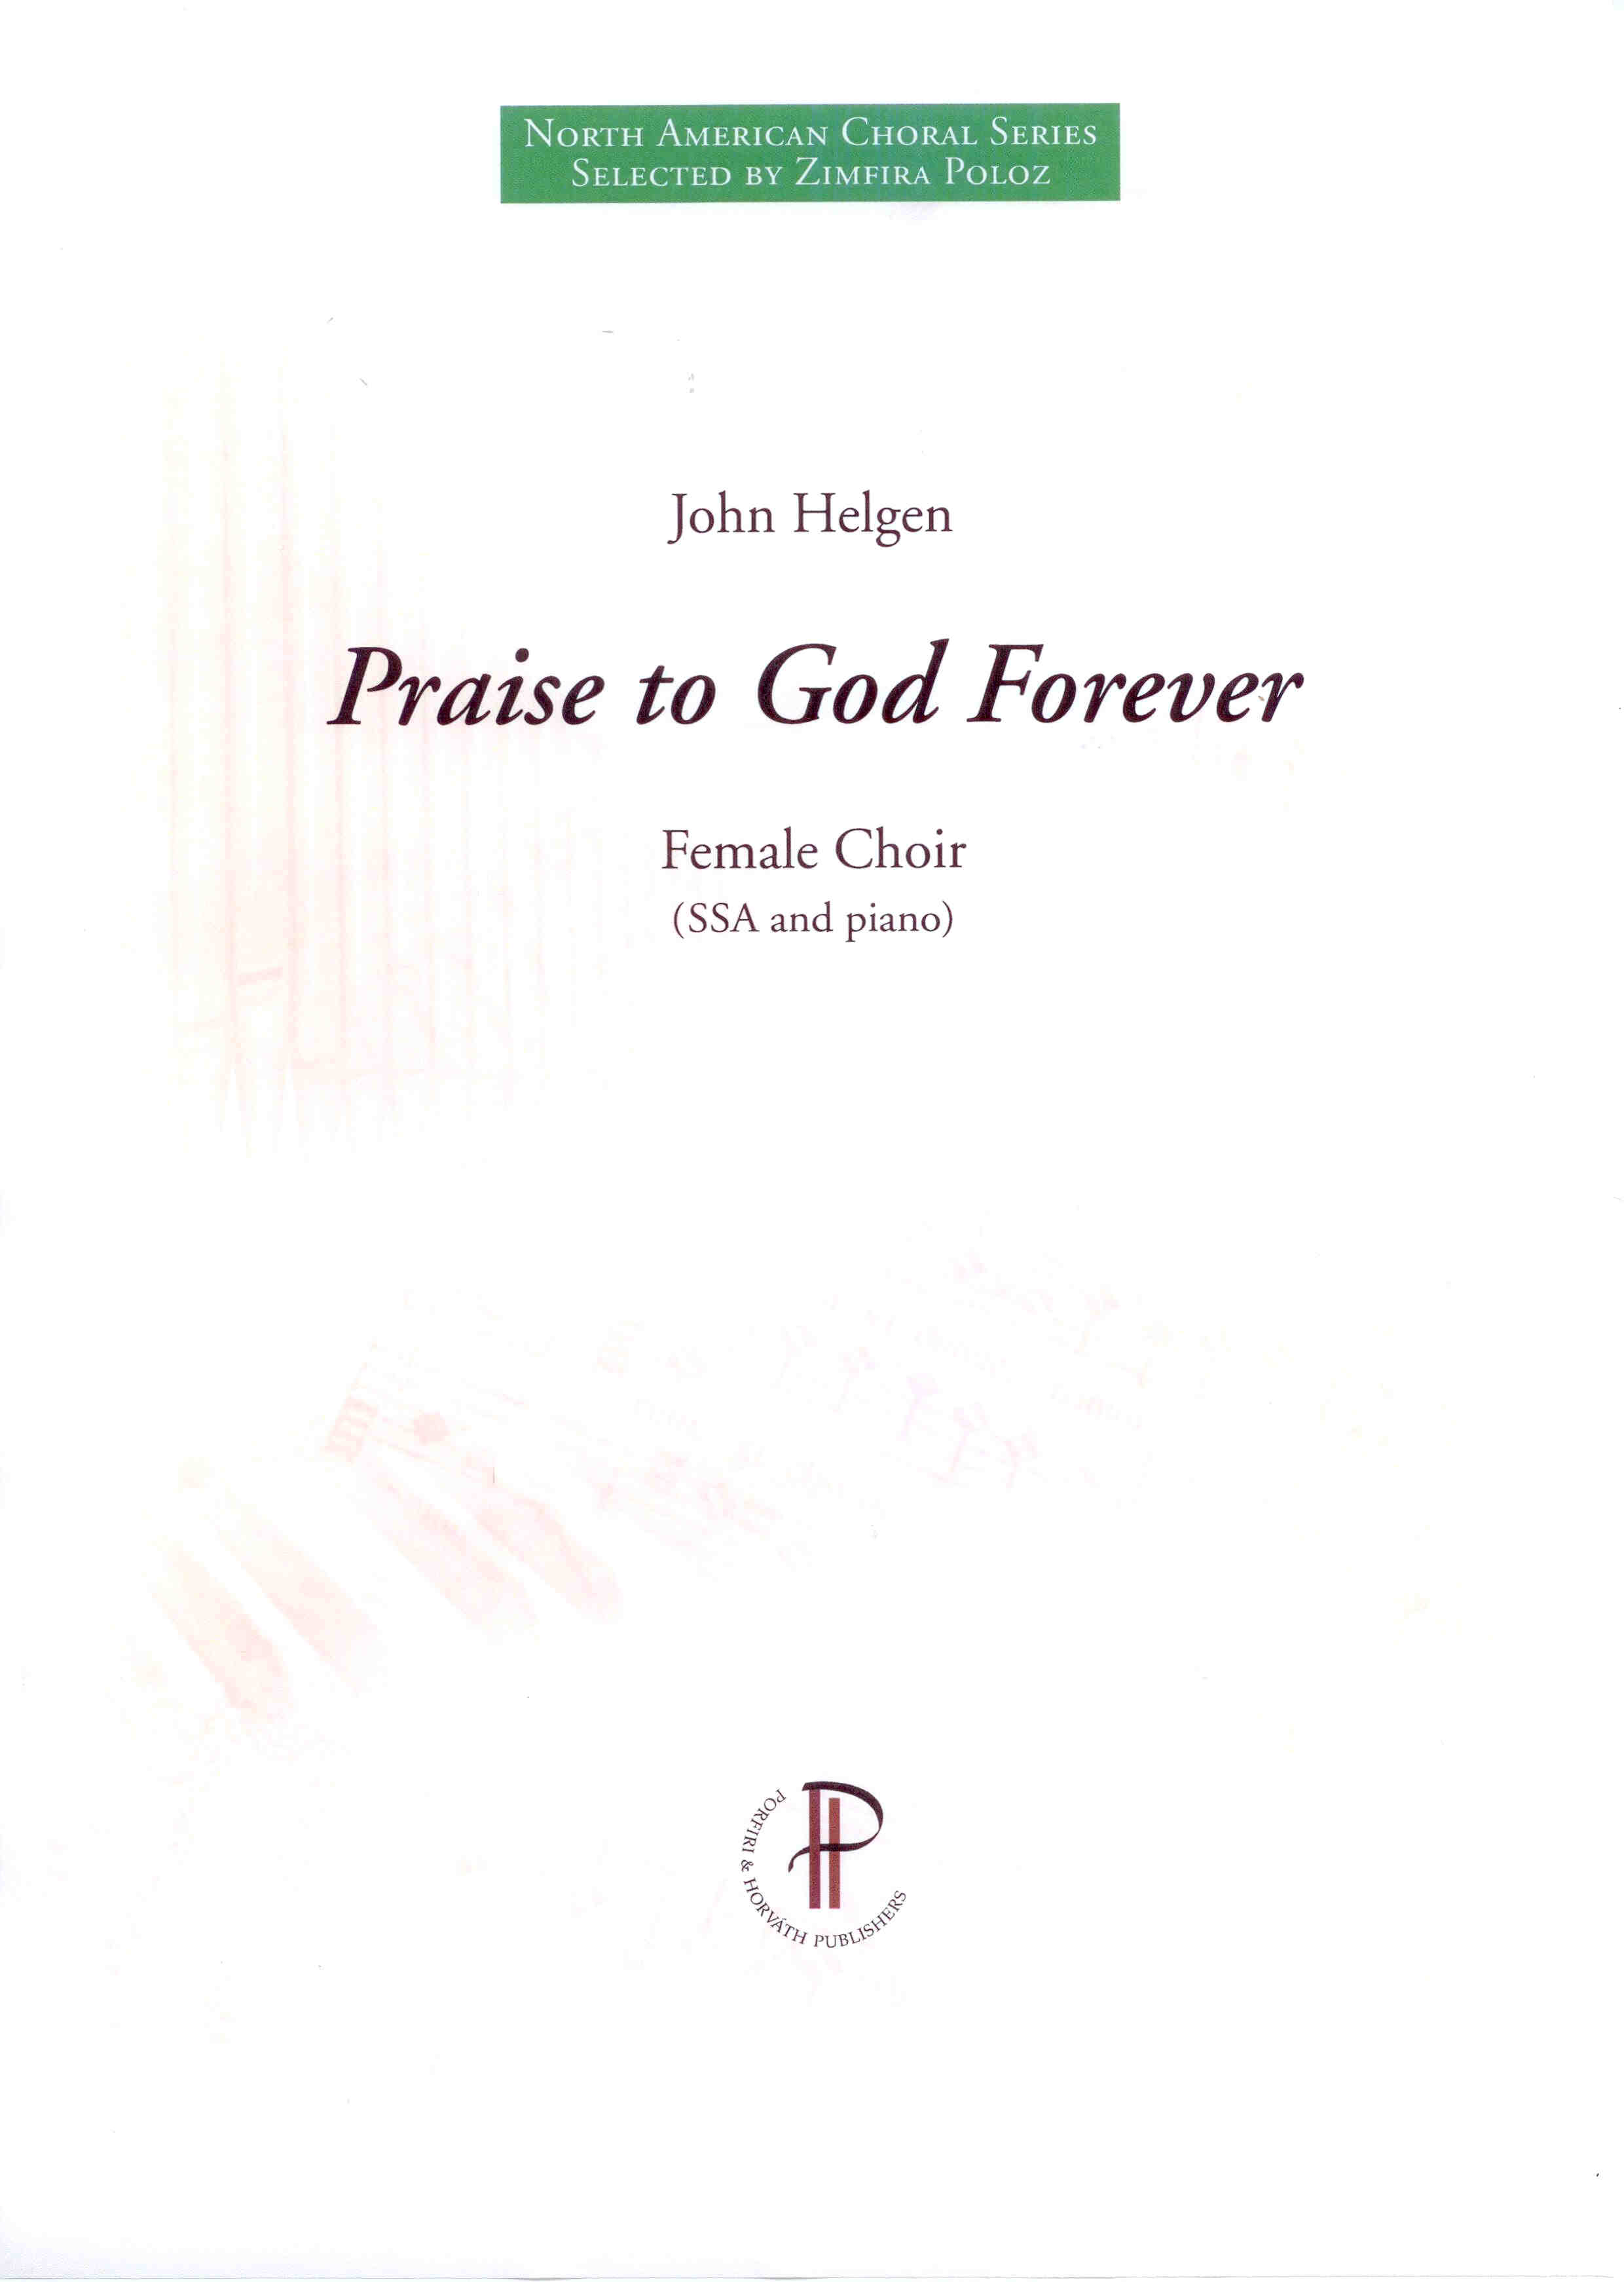 Praise to God Forever - Show sample score